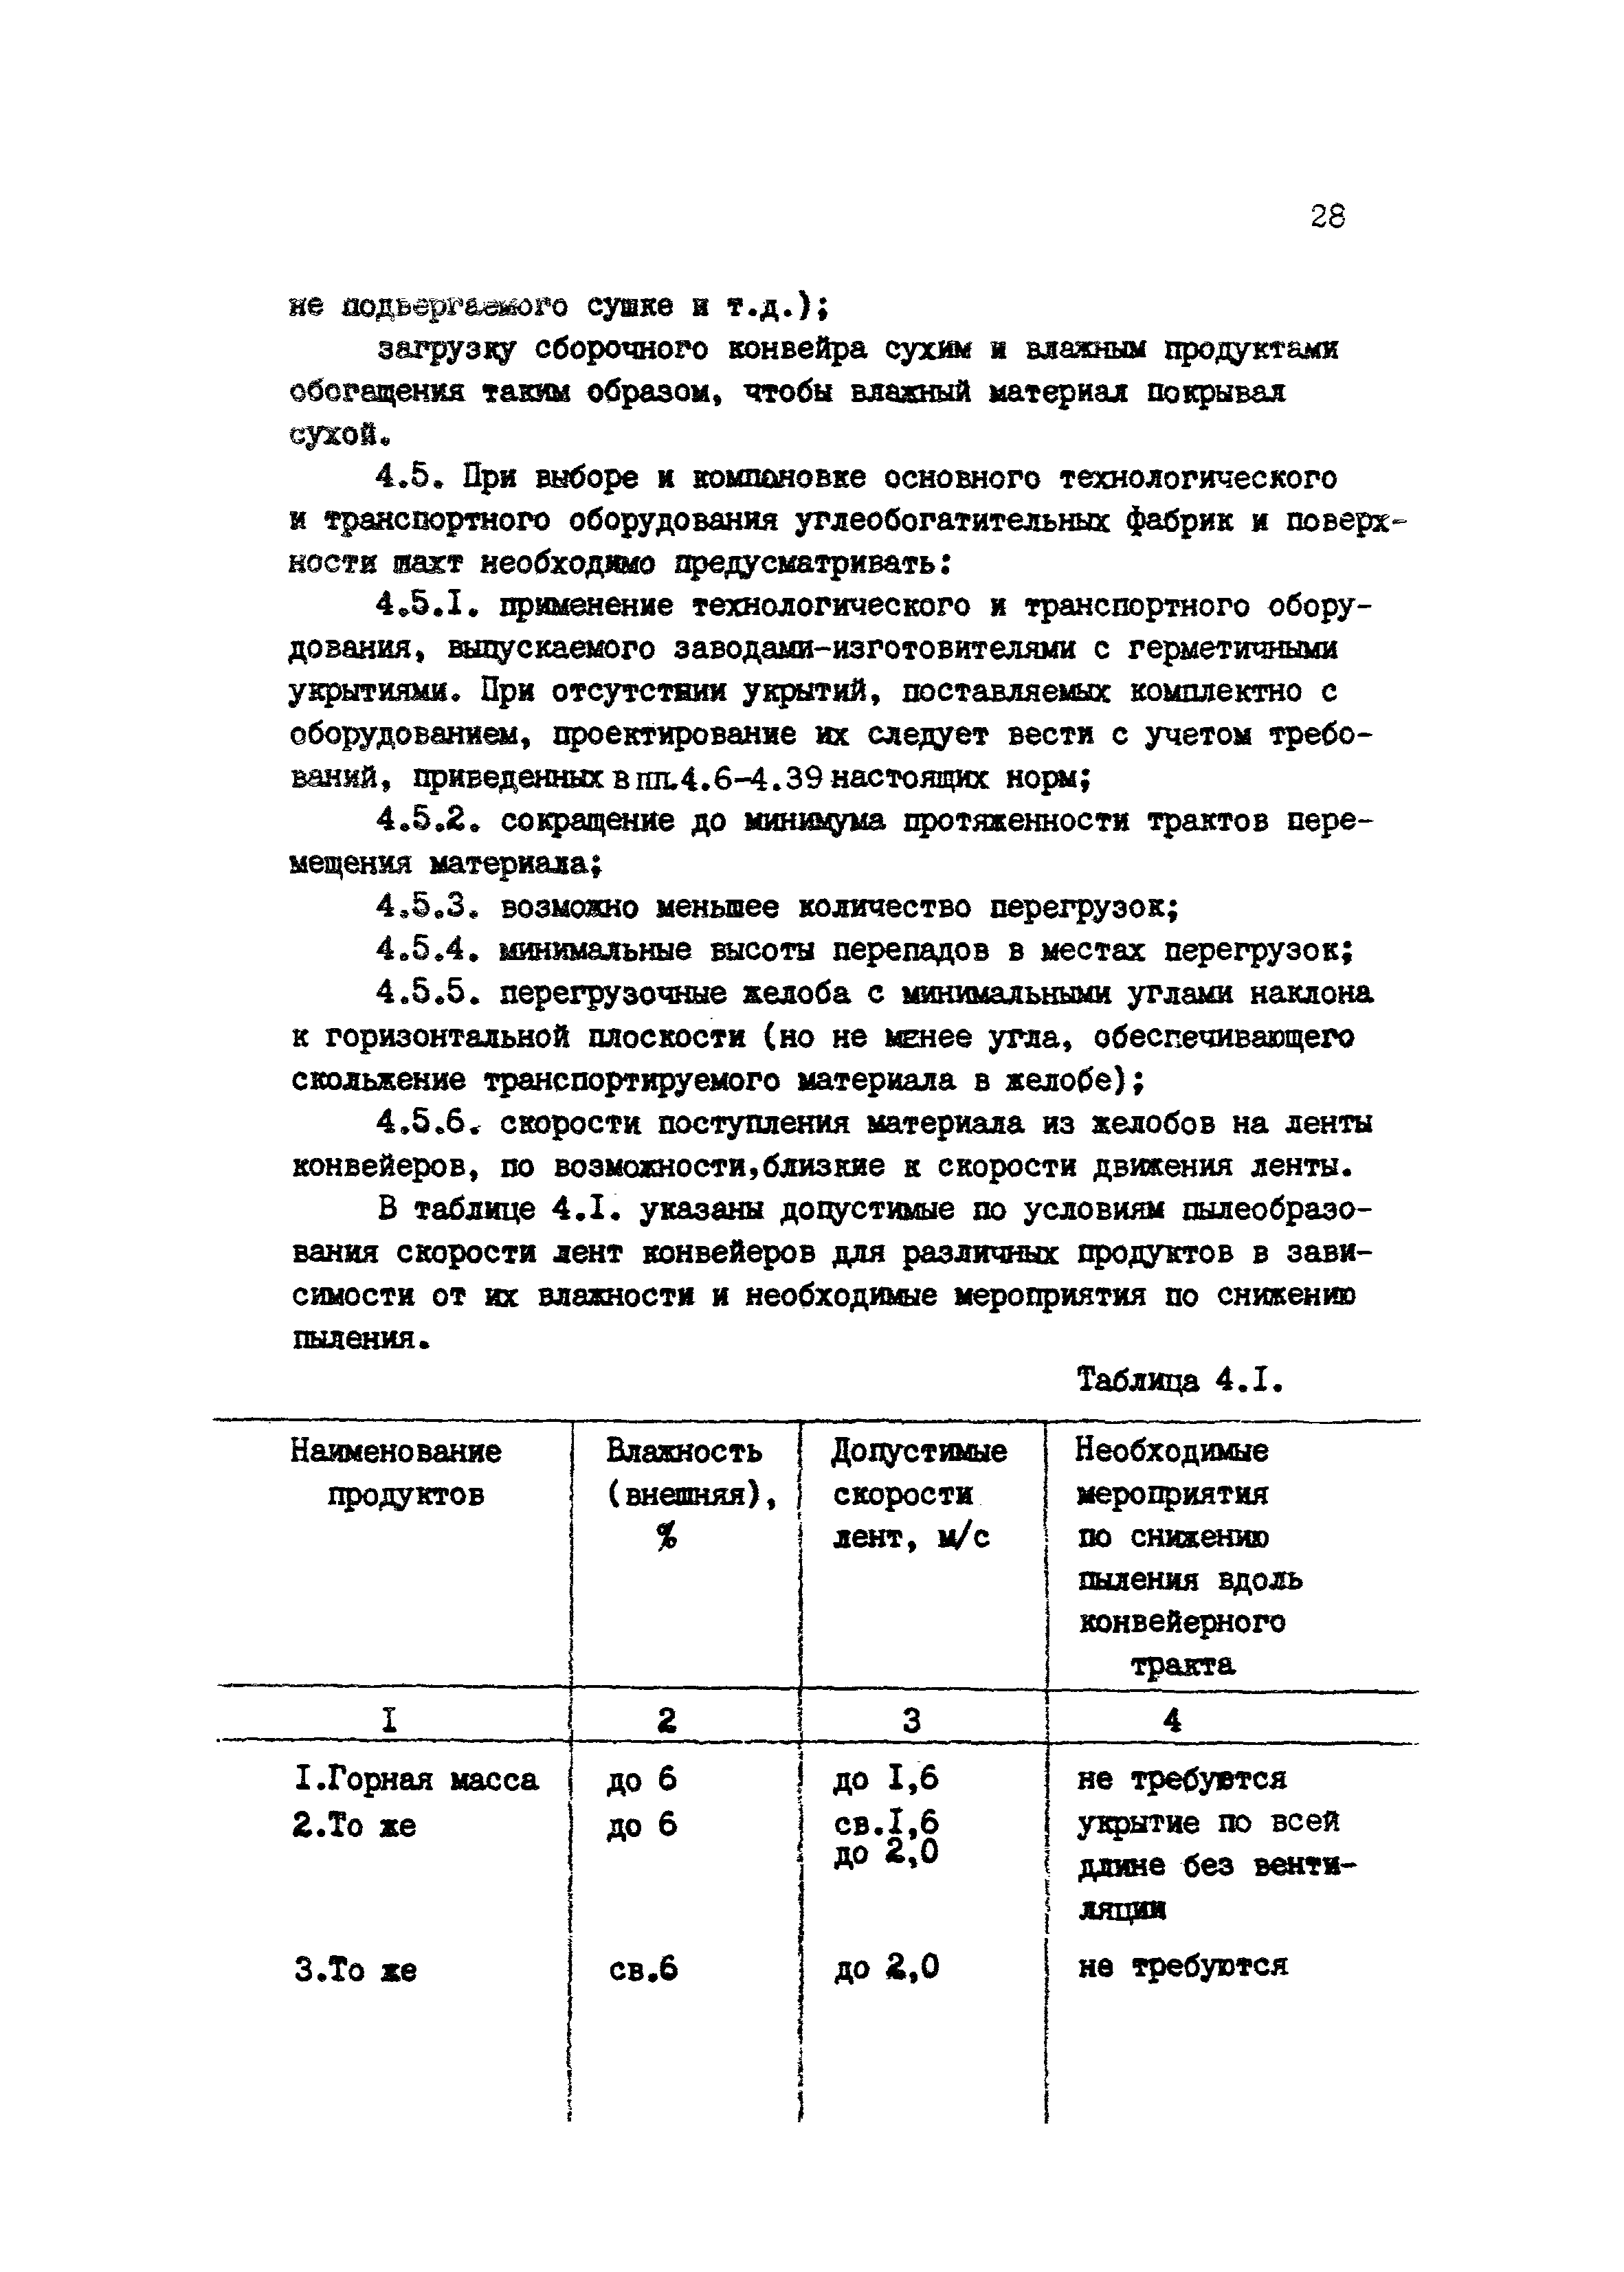 ВНТП 4-86